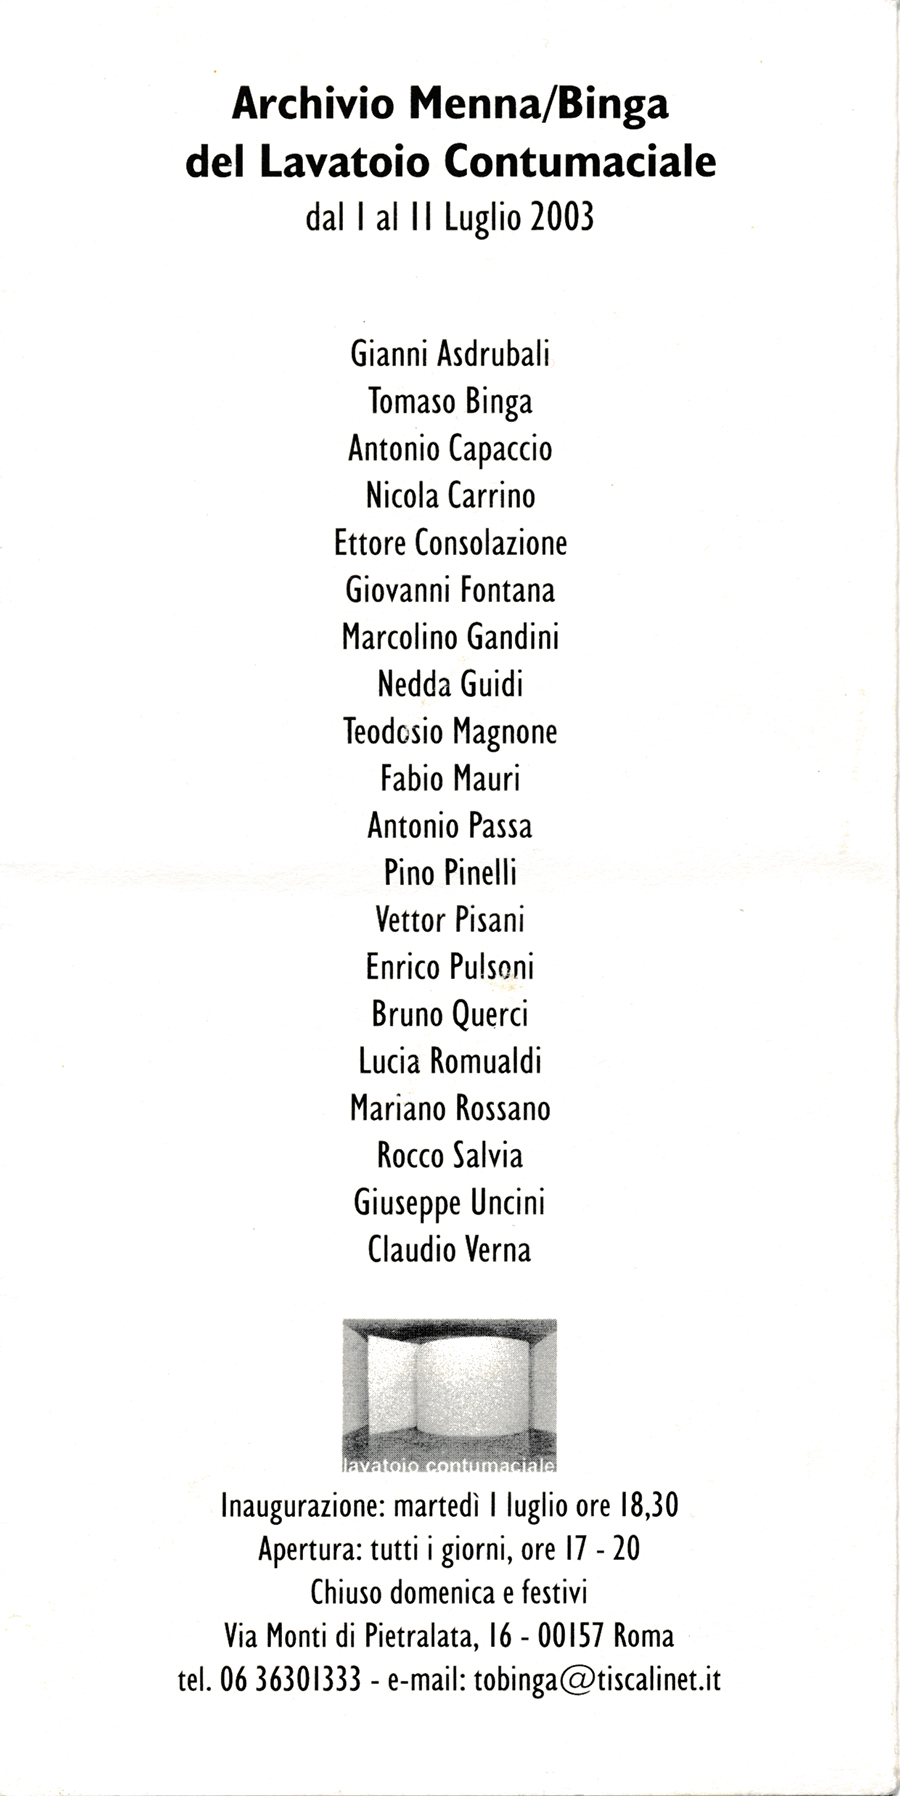 2003 Roma Archivio Menna-Binga